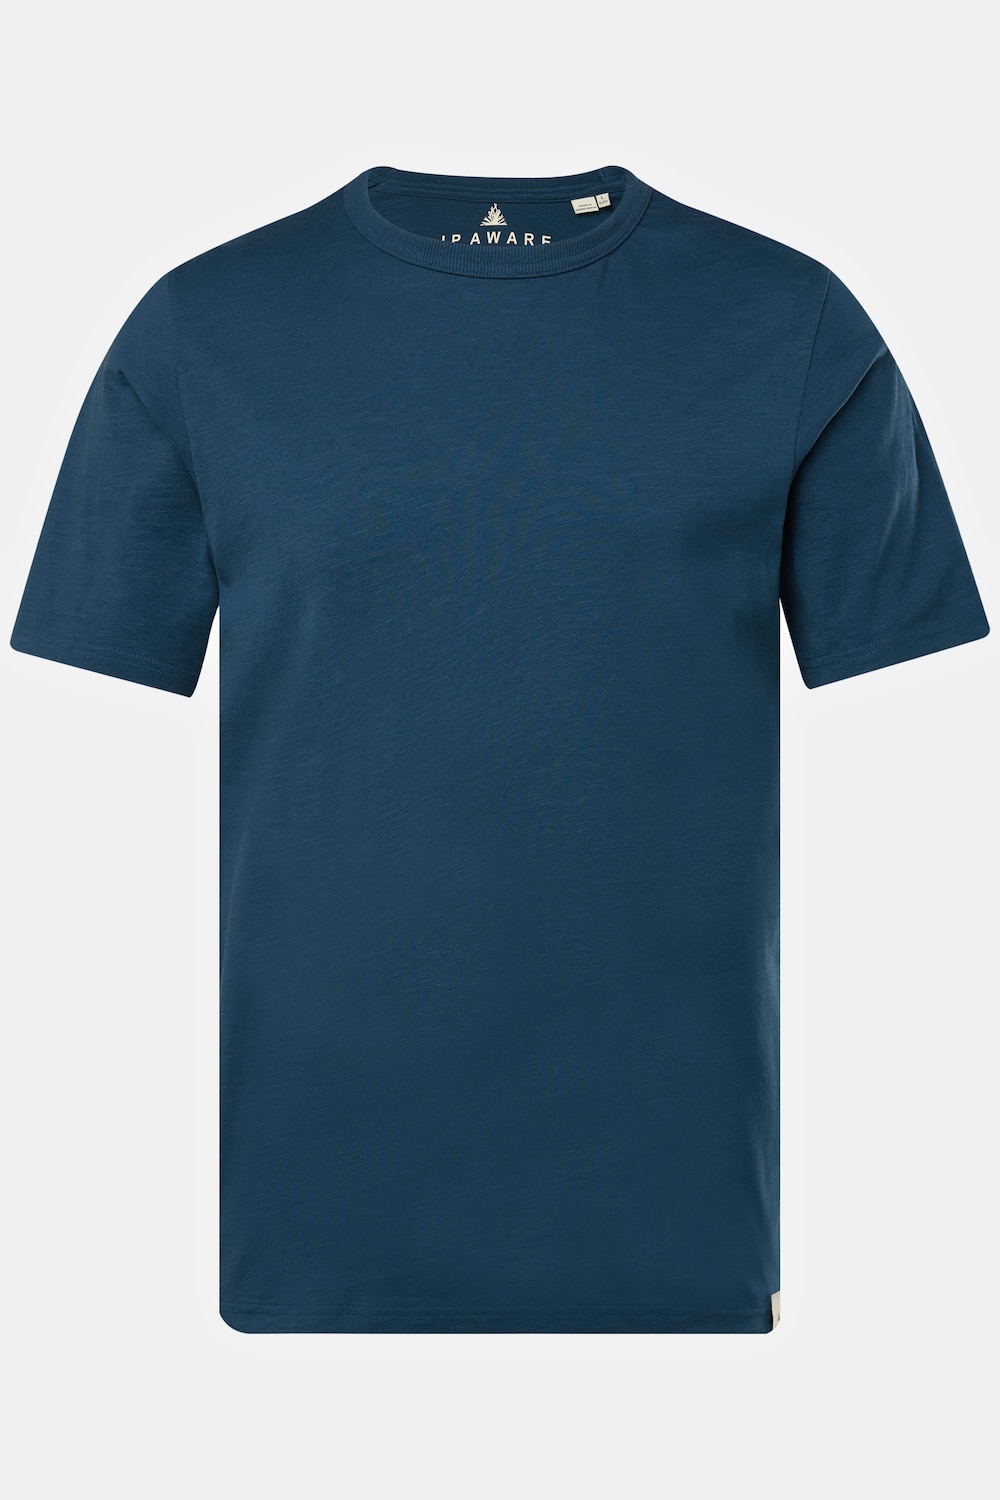 Grote Maten JP AWARE T-shirt, Heren, blauw, Maat: L, Katoen, JP-Aware